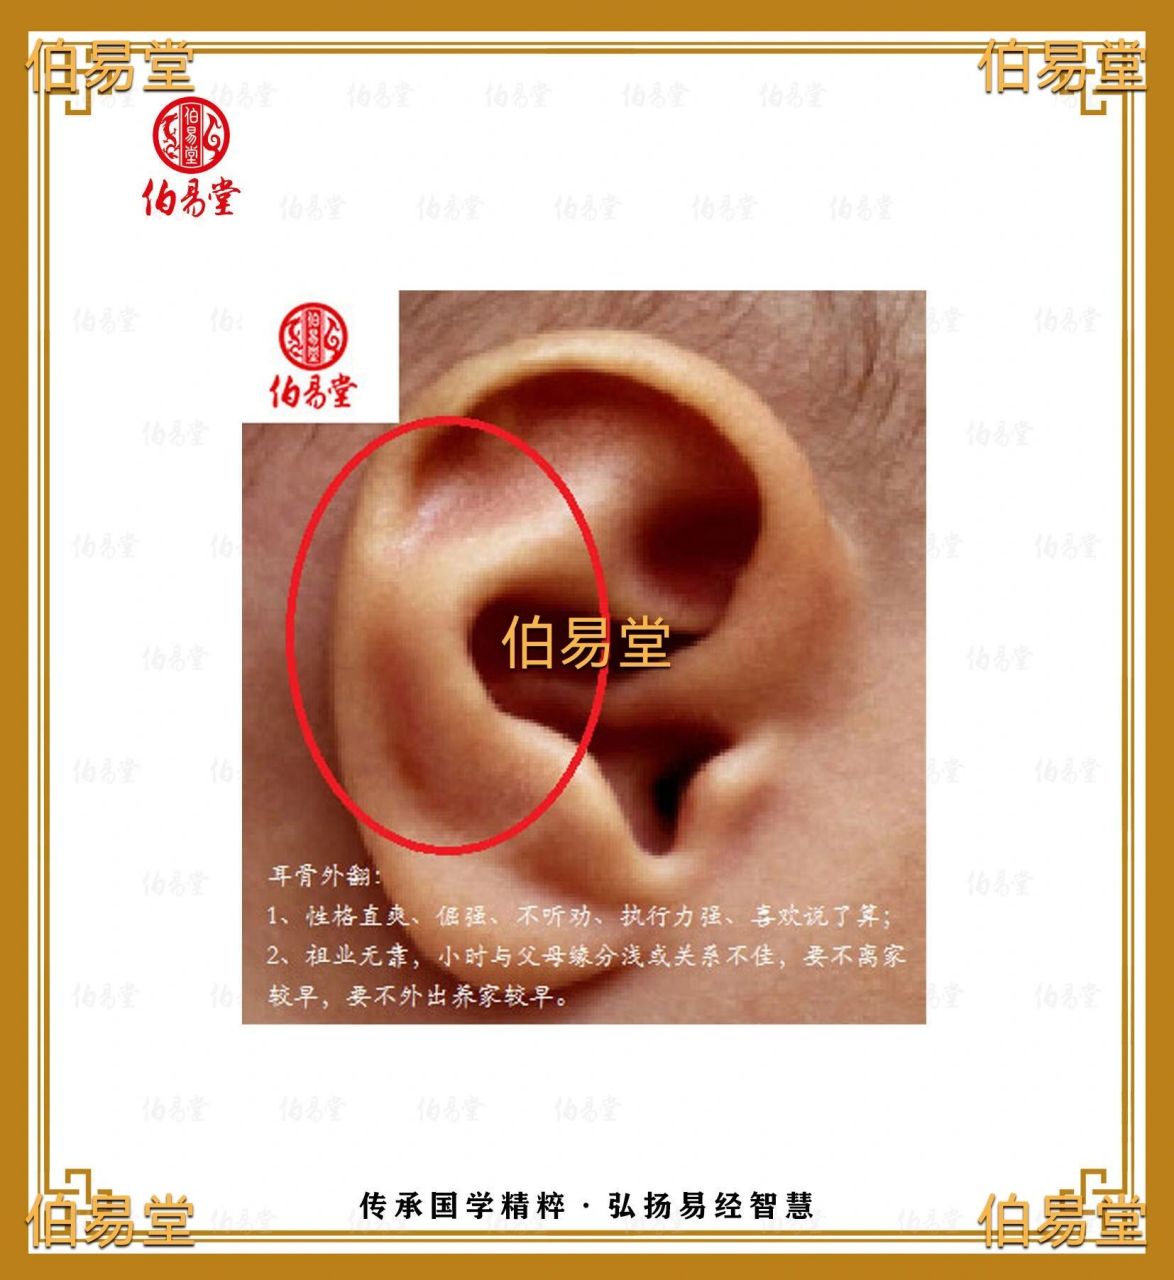 耳廓外翻代表什么图片